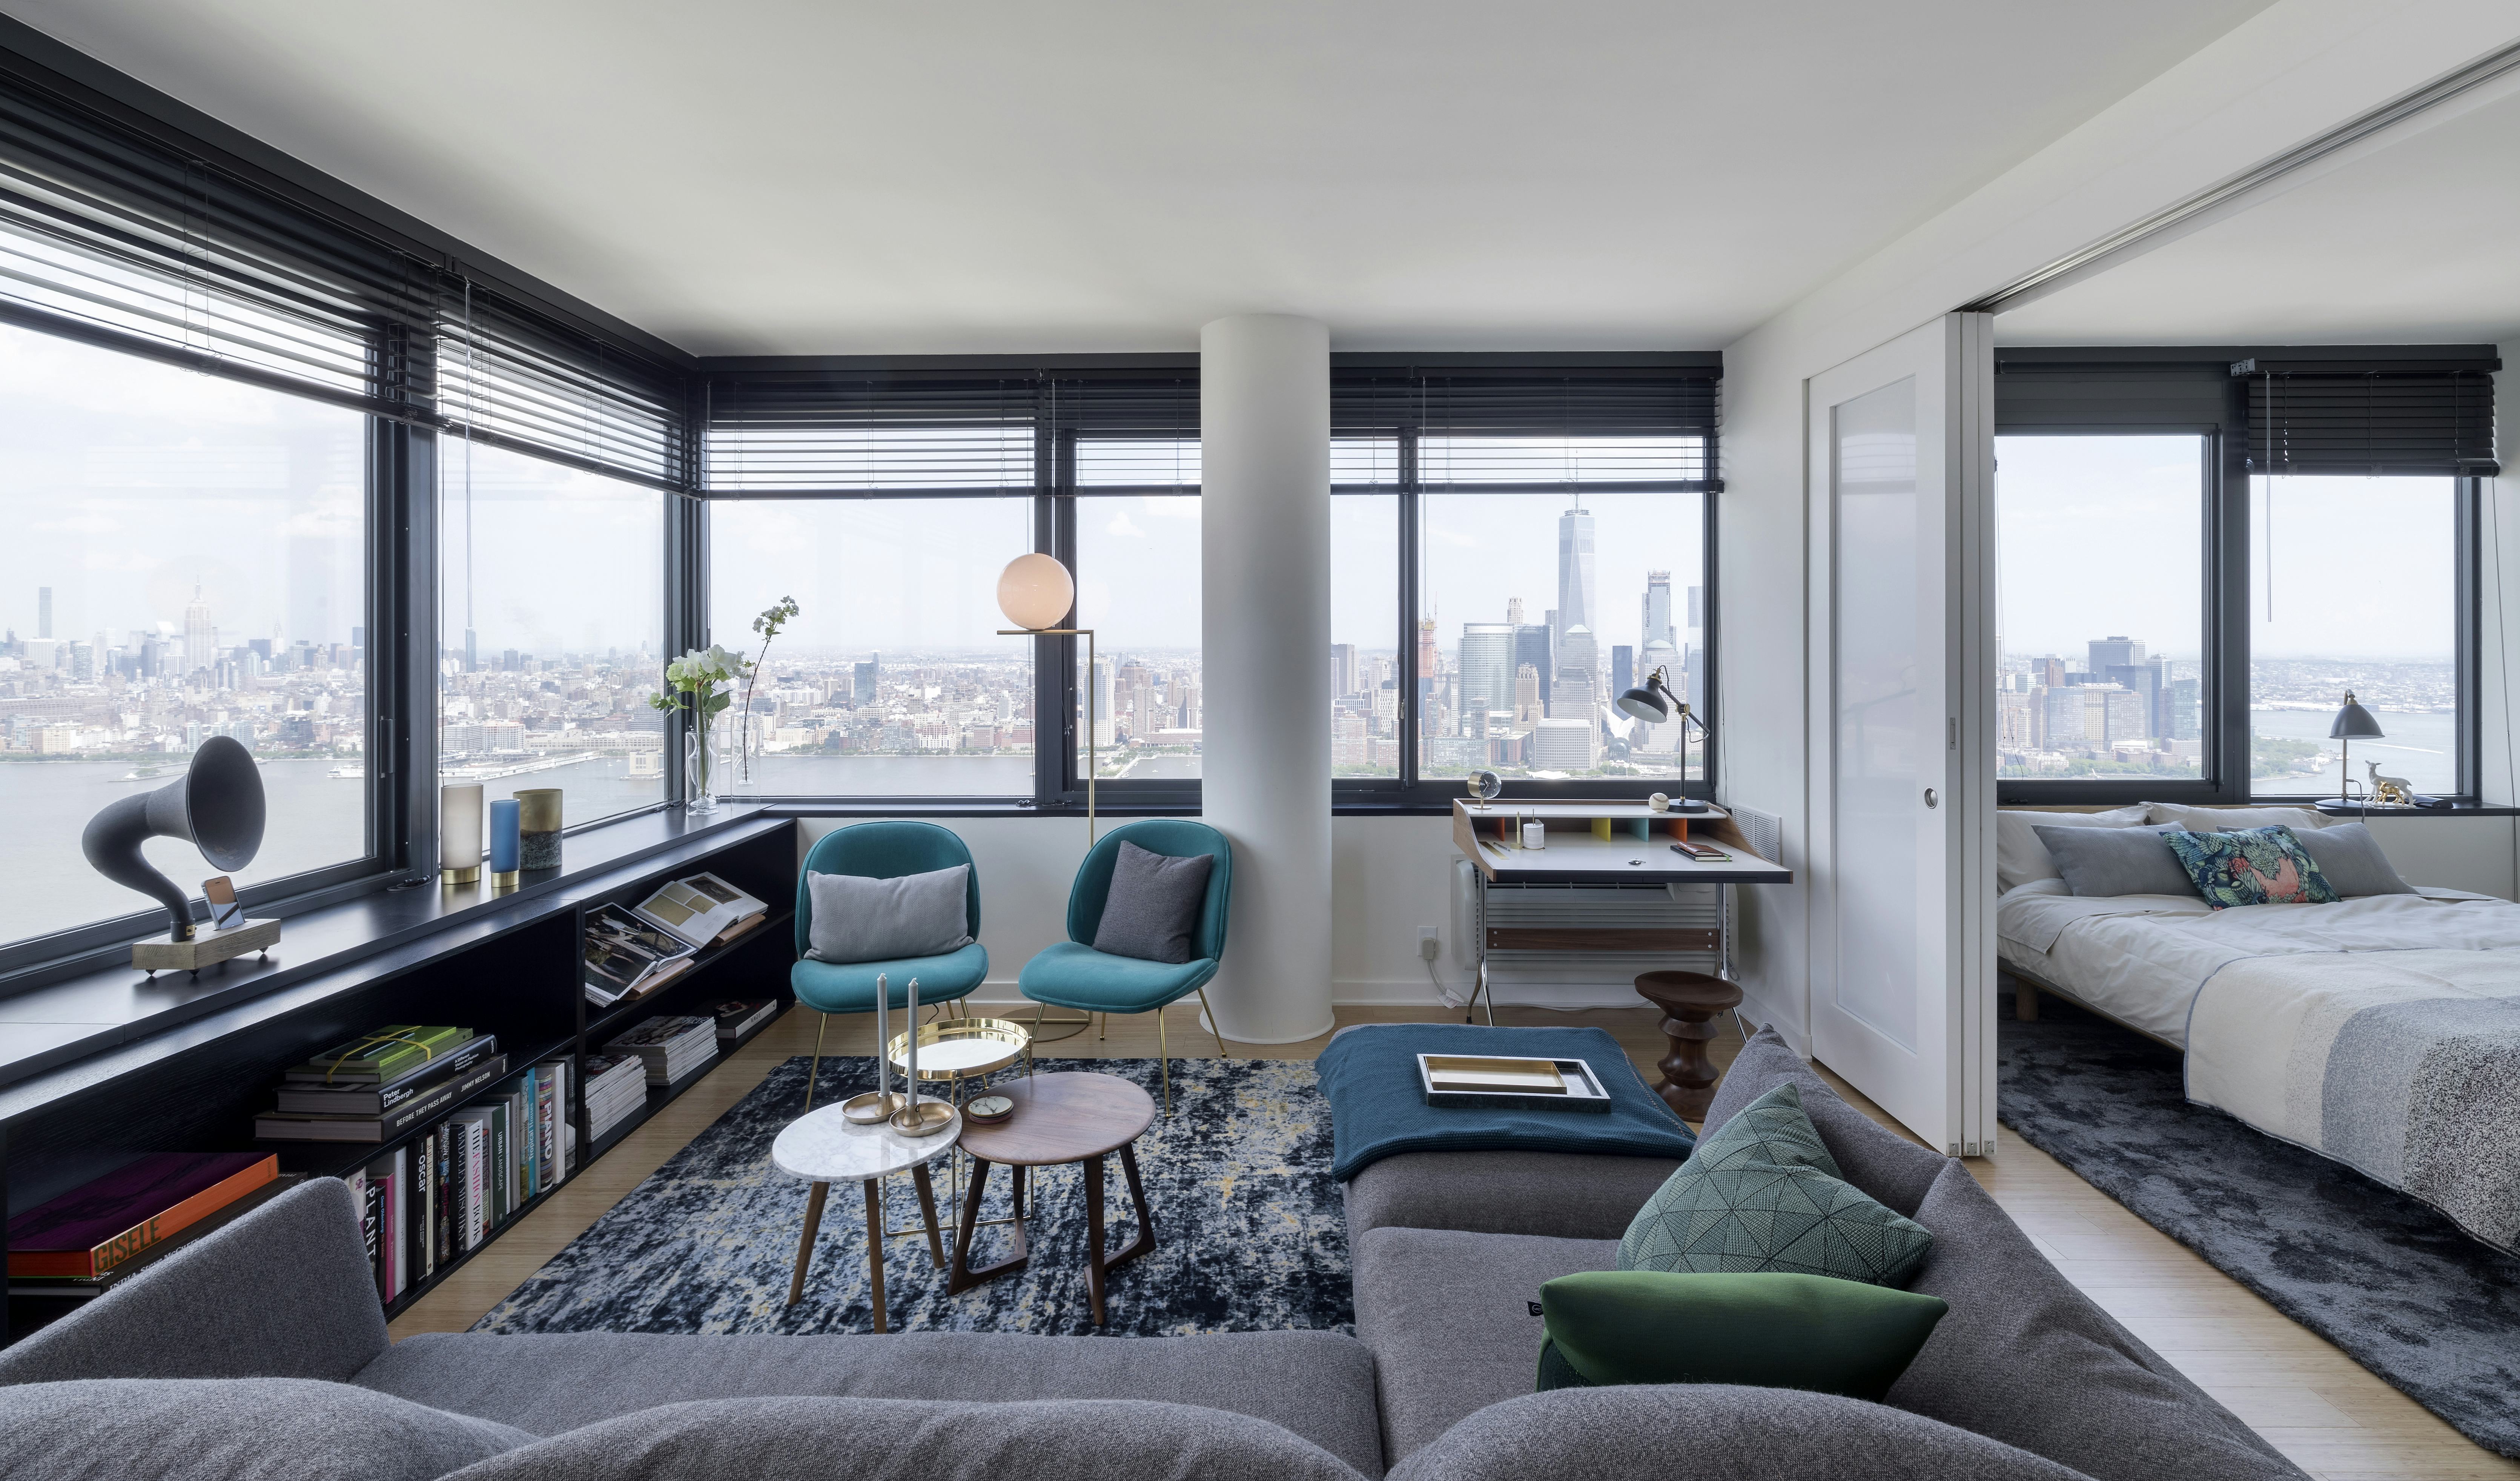 Appartement in Urby-woontoren door Concrete met uitzicht op Manhattan Beeld Ewout Huibers / Concrete architectural associates